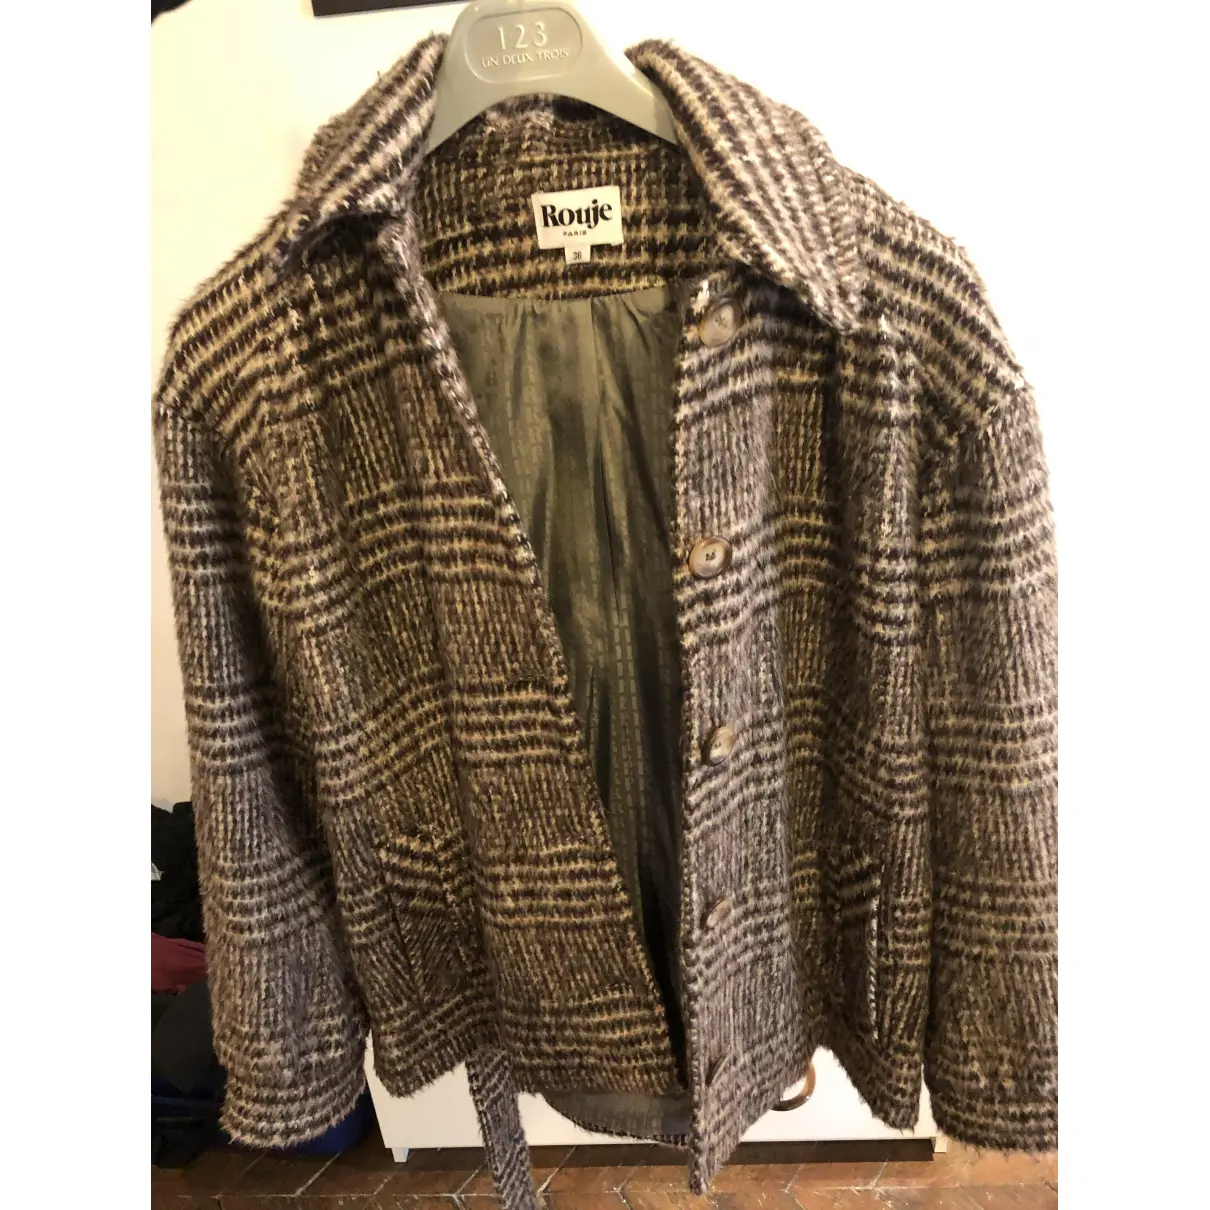 Buy Rouje Fall Winter 2019 wool coat online